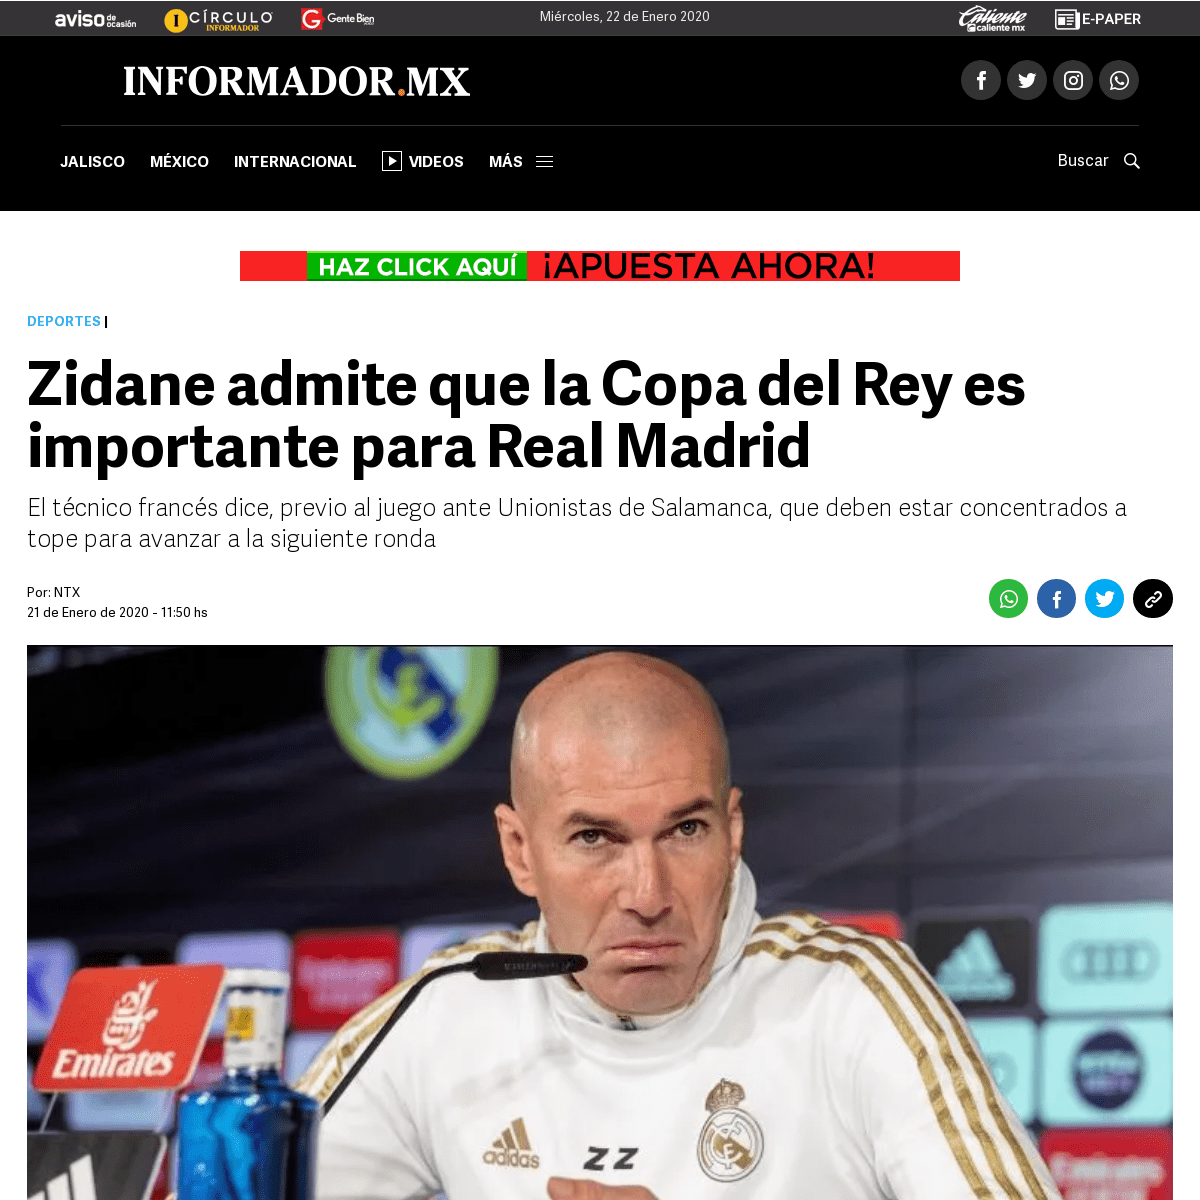 A complete backup of www.informador.mx/deportes/Zidane-admite-que-la-Copa-del-Rey-es-importante-para-Real-Madrid-20200121-0074.h